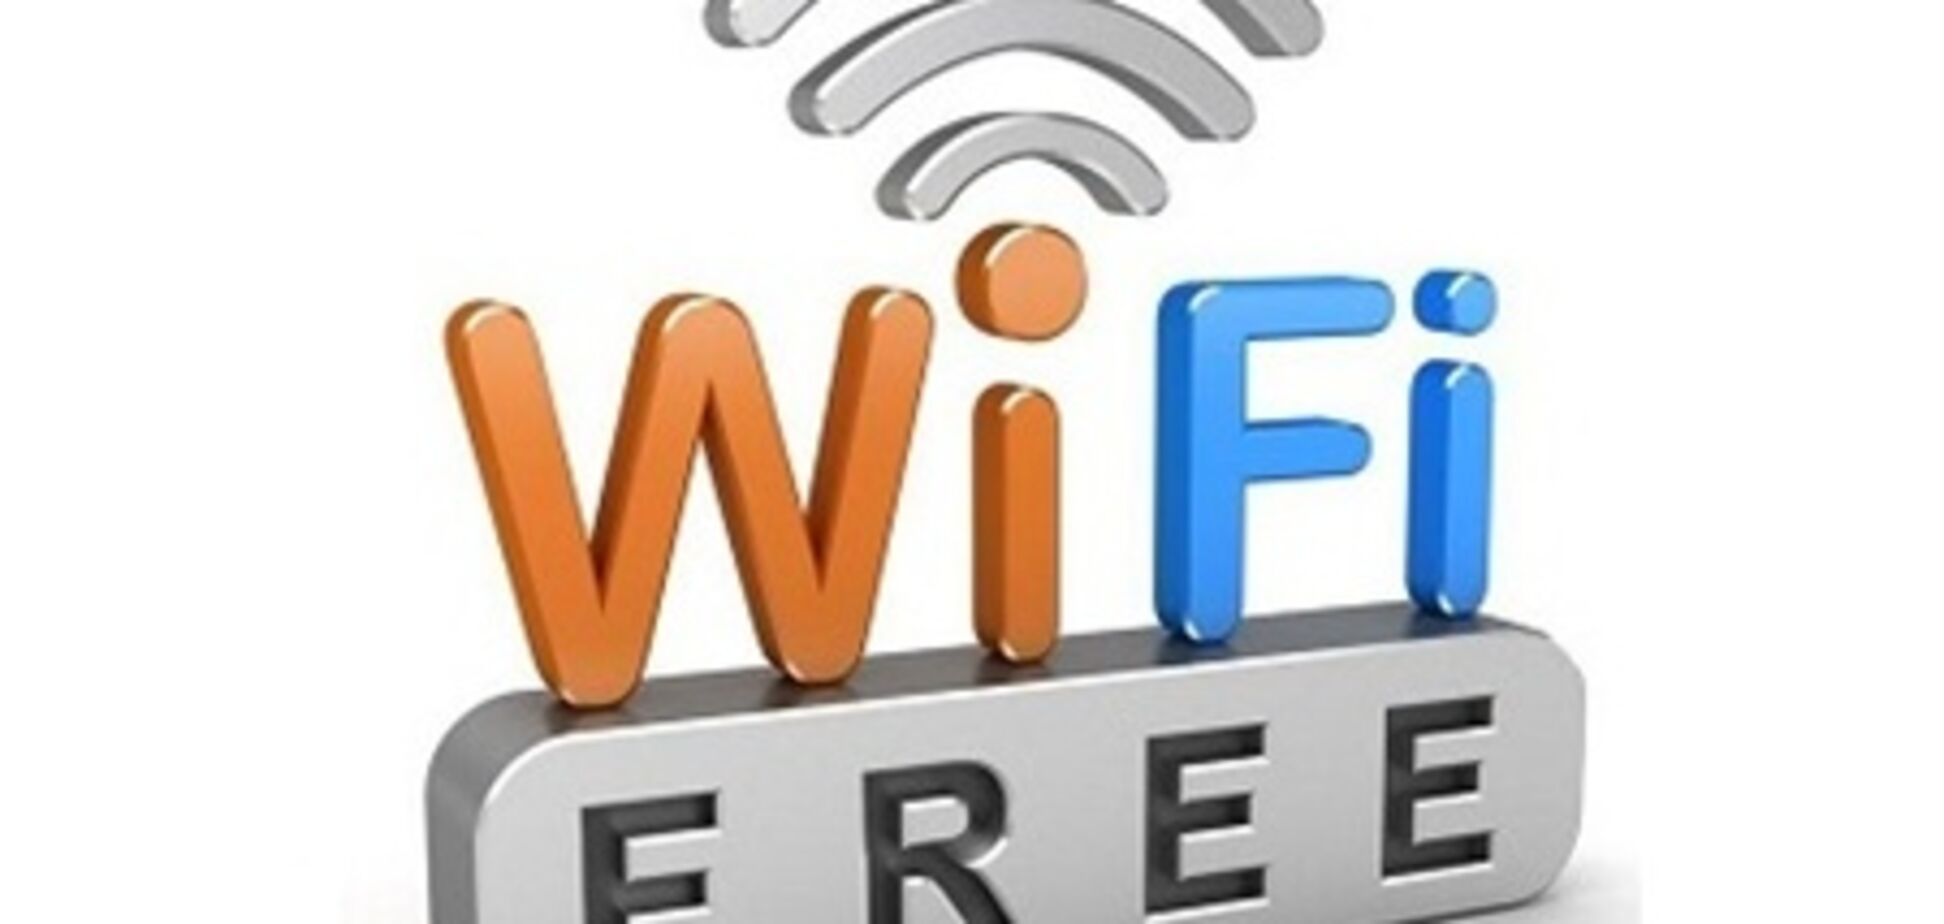 С 2013 года курорты Крыма предложат бесплатный Wi-Fi